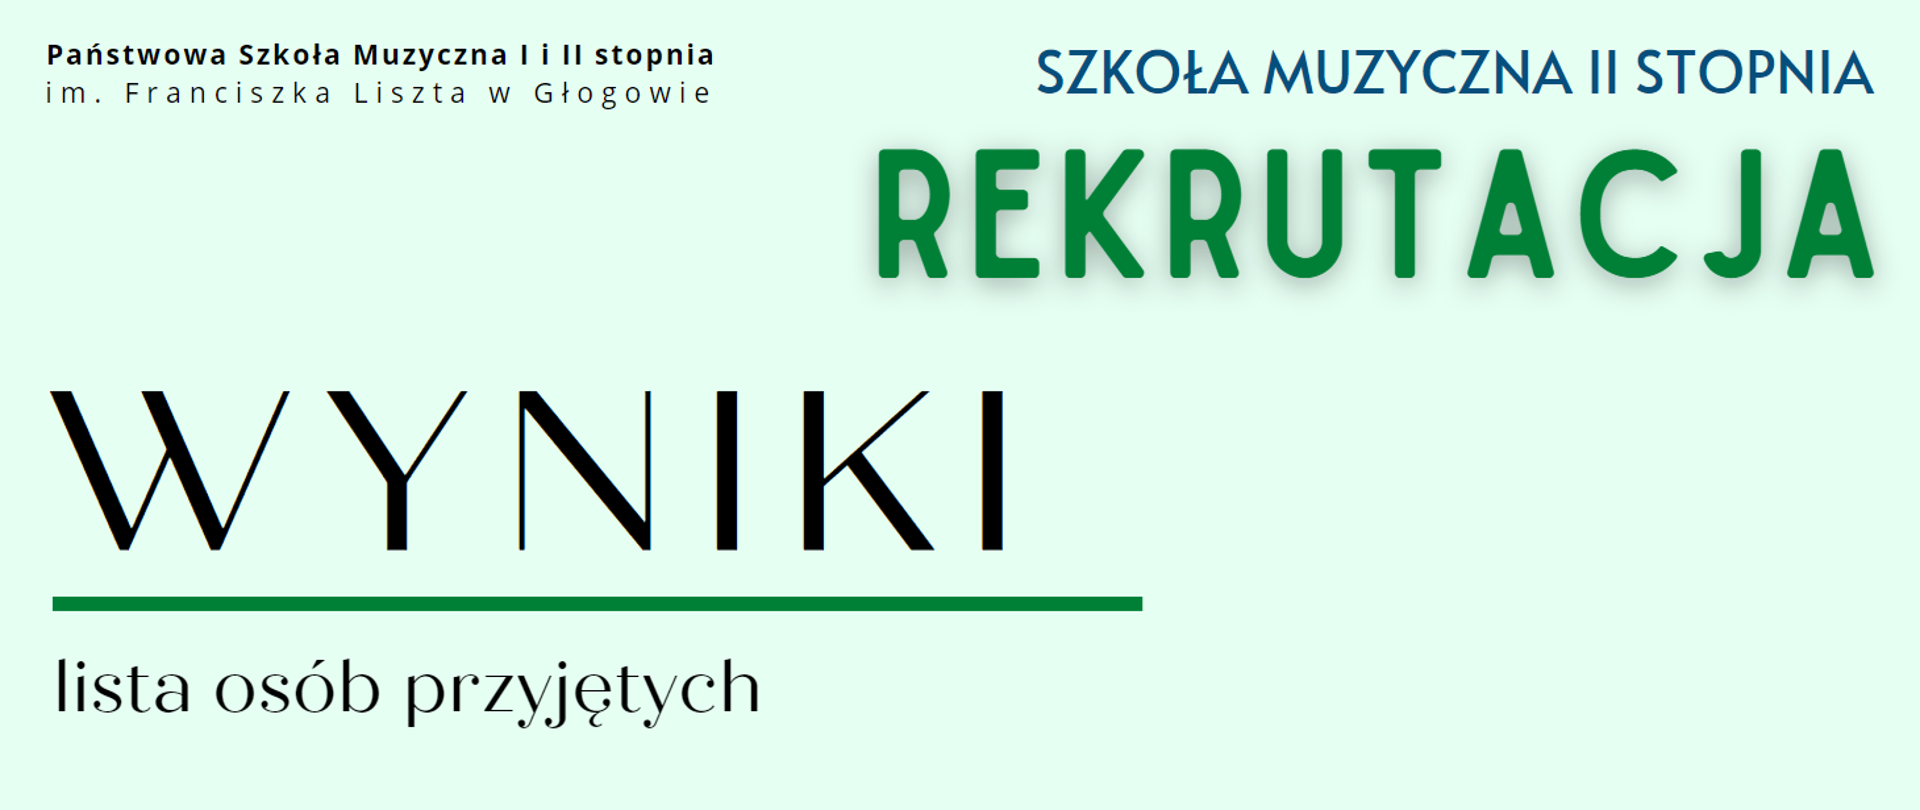 Treść napisów: "Państwowa Szkoła Muzyczna I i II stopnia im. Franciszka Liszta w Głogowie" - napis w kolorze czarnym ułożony w dwóch rzędach w lewym górnym rogu, "SZKOŁA MUZYCZNA II STOPNIA" w kolorze ciemnoniebieskim w prawym górnym rogu, poniżej "REKRUTACJA" - litery zielone, większa czcionka, "WYNIKI" - w lewej dolnej części, litery w kolorze czarnym, słowo wyróżnione dużą czcionką i podkreśleniem (pozioma linia w kolorze zielonym), "lista osób przyjętych" - poniżej, litery czarne.. Tło jasne. 